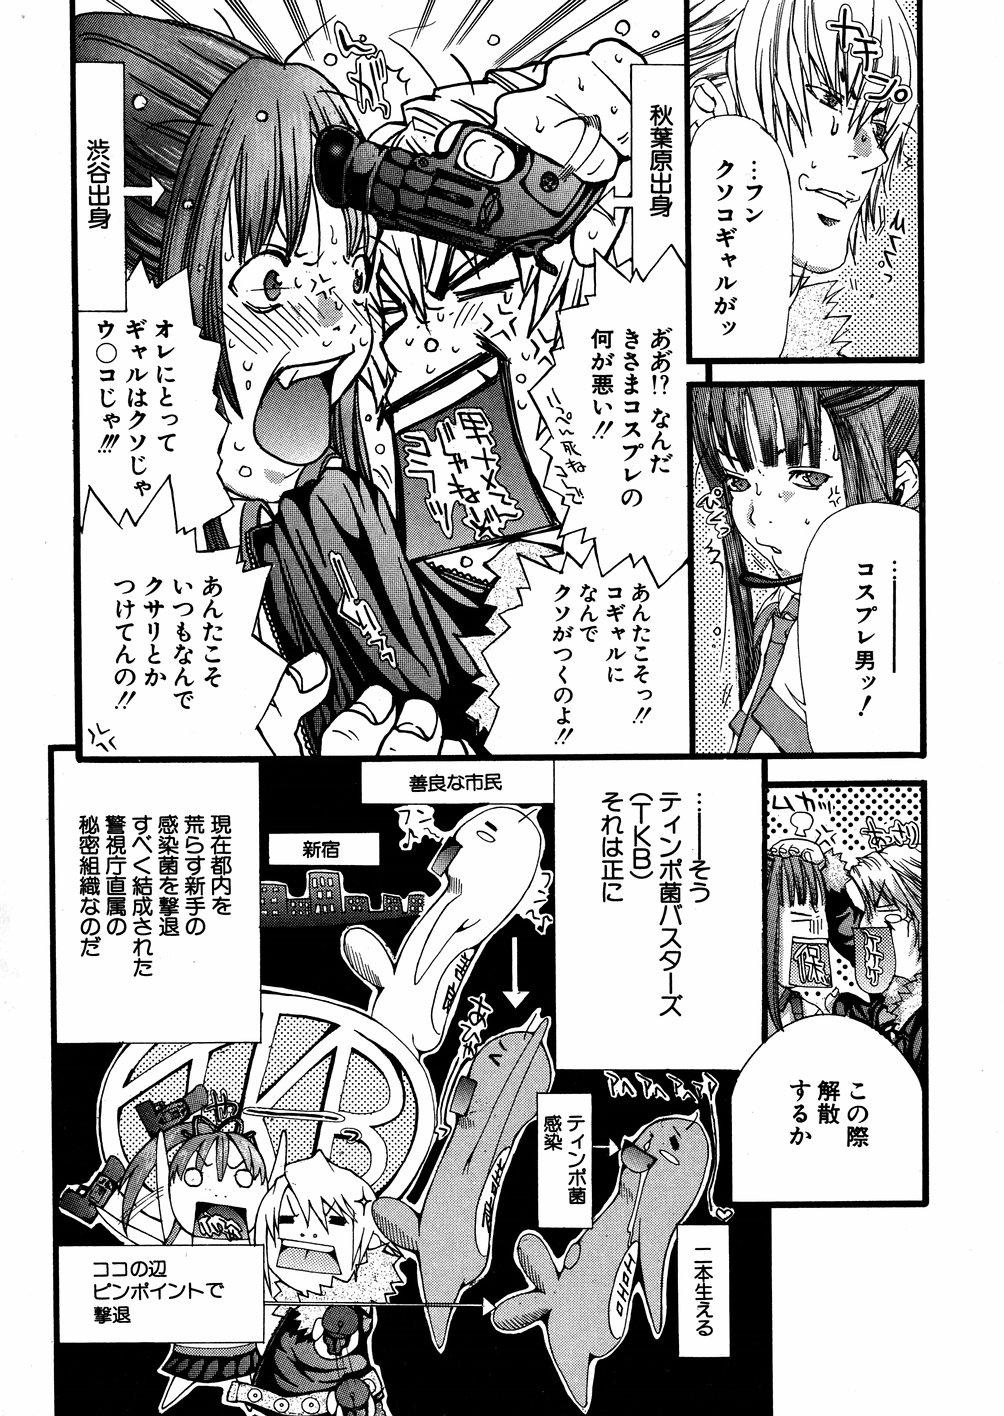 Swinger Miyazaki Maya daihyakka Assfingering - Page 9